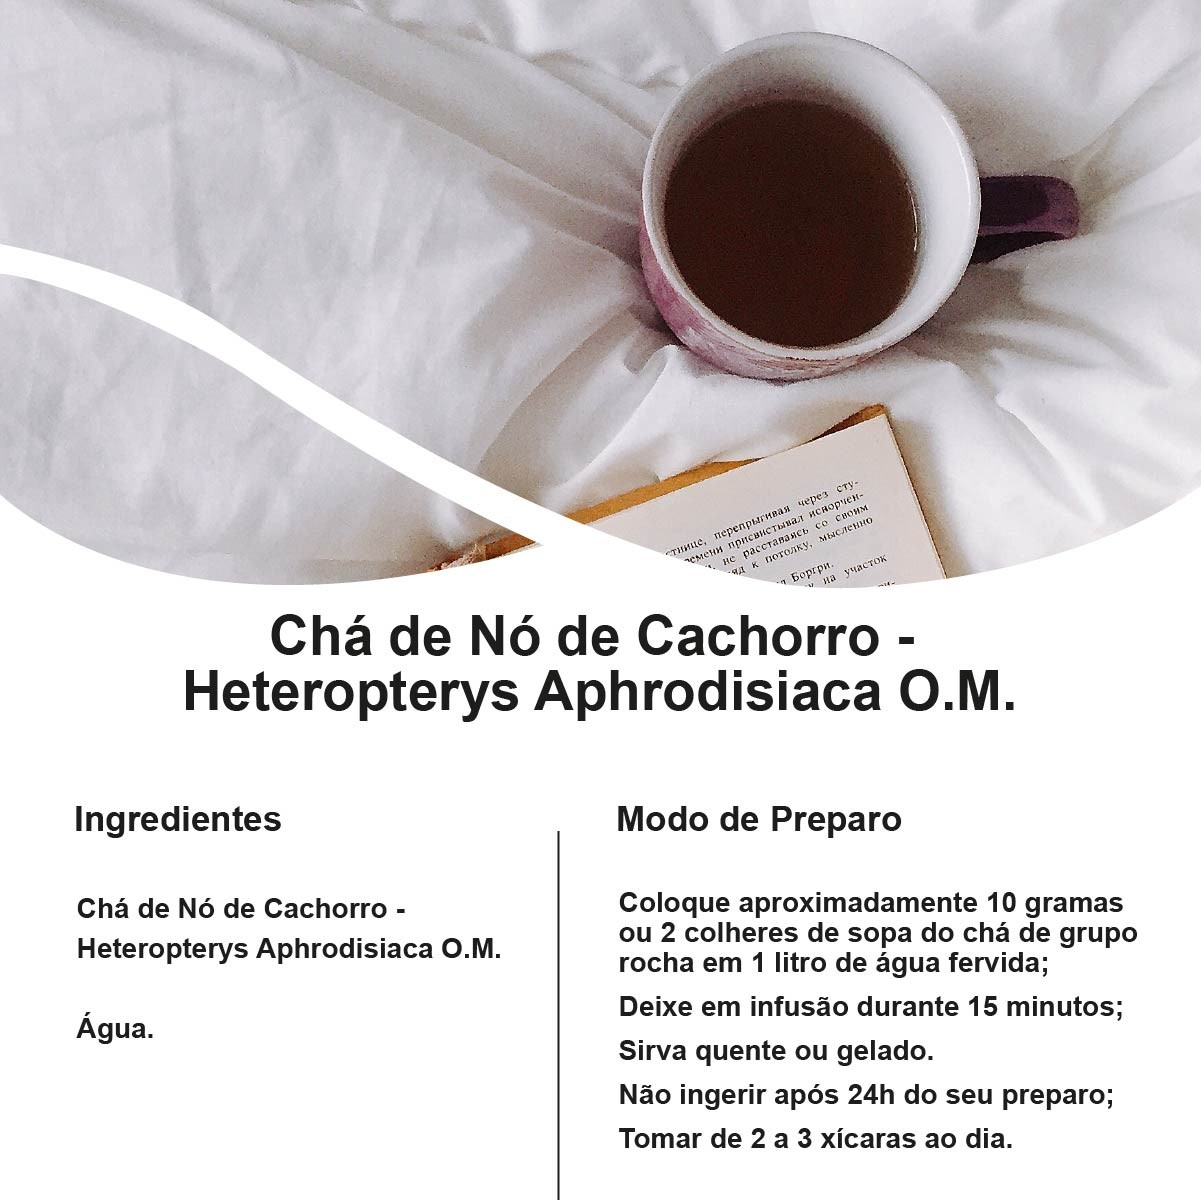 Chá de Nó de Cachorro - Heteropteris Aphrodisiaca O.M. - 100g